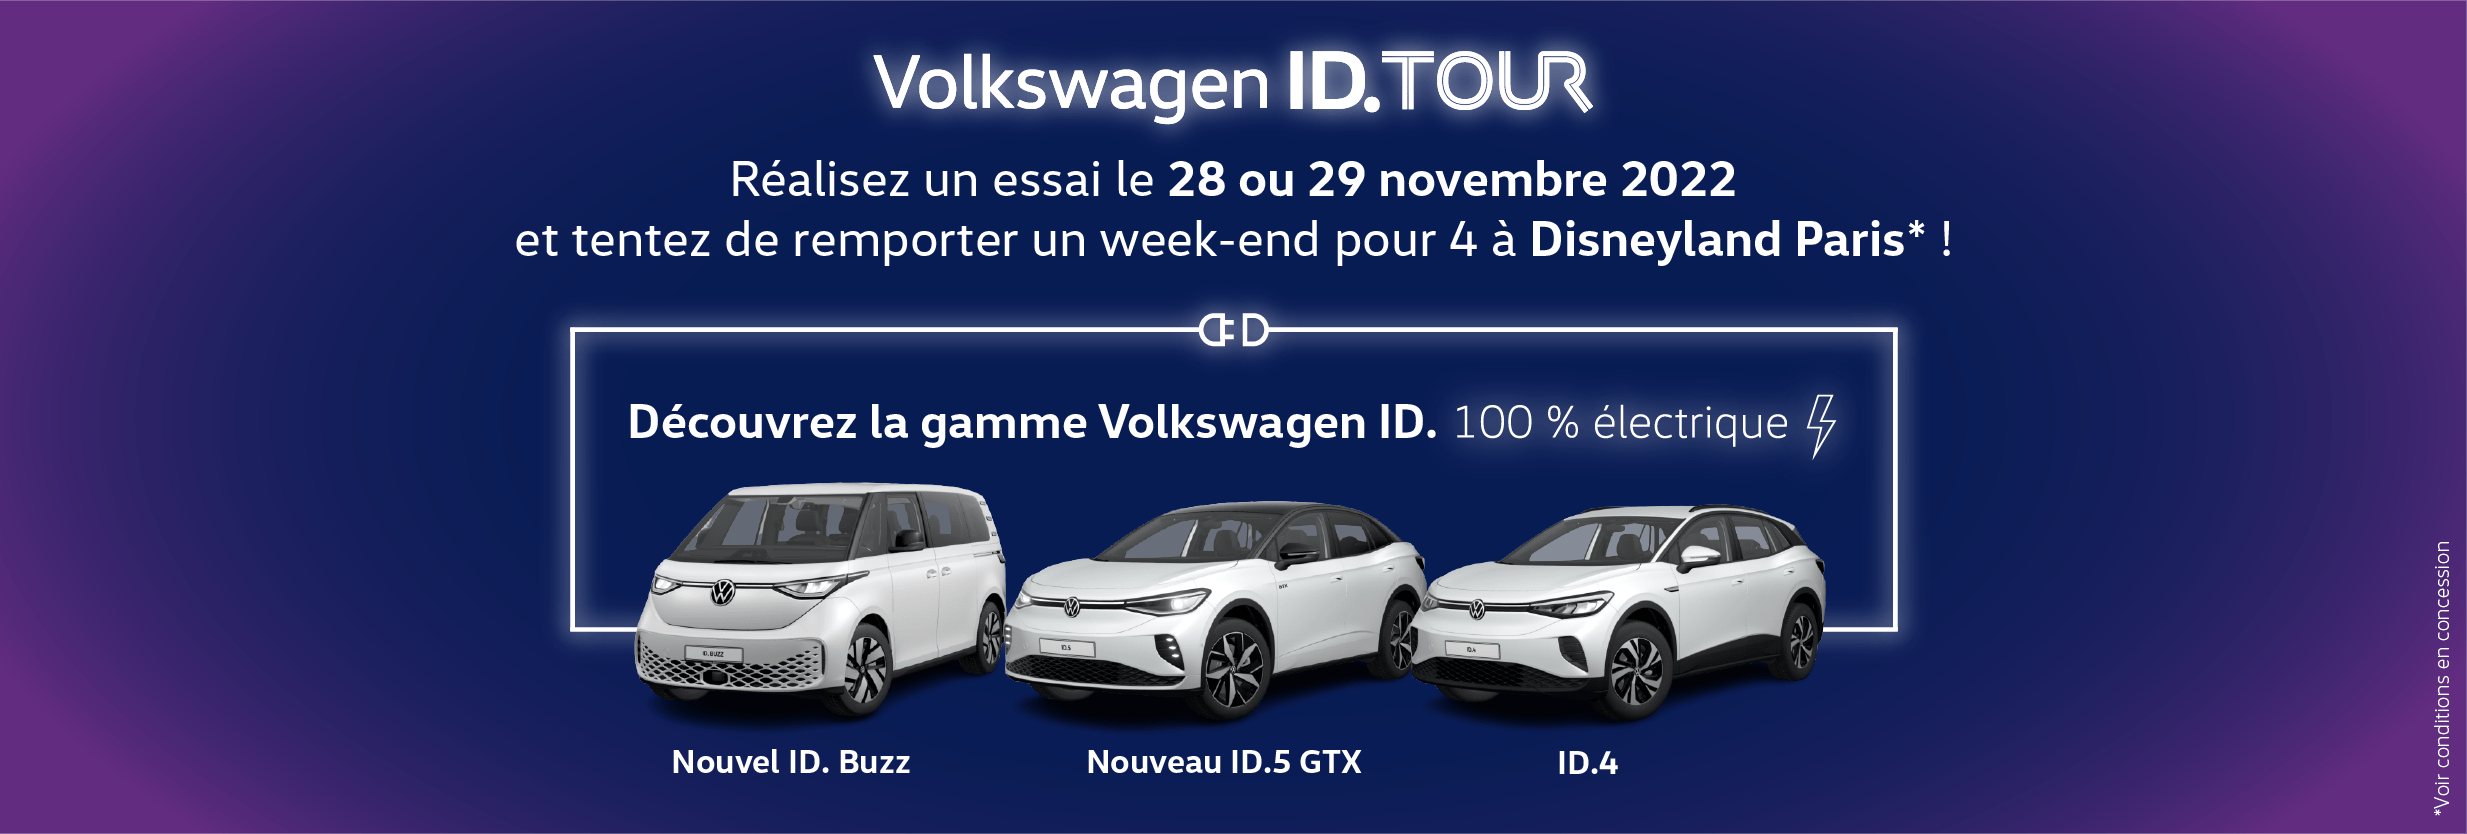 Volkswagen Dunkerque AUTO-EXPO - Tentez de gagner un séjour à Disneyland pour 4 personnes avec l'ID Tour ! 